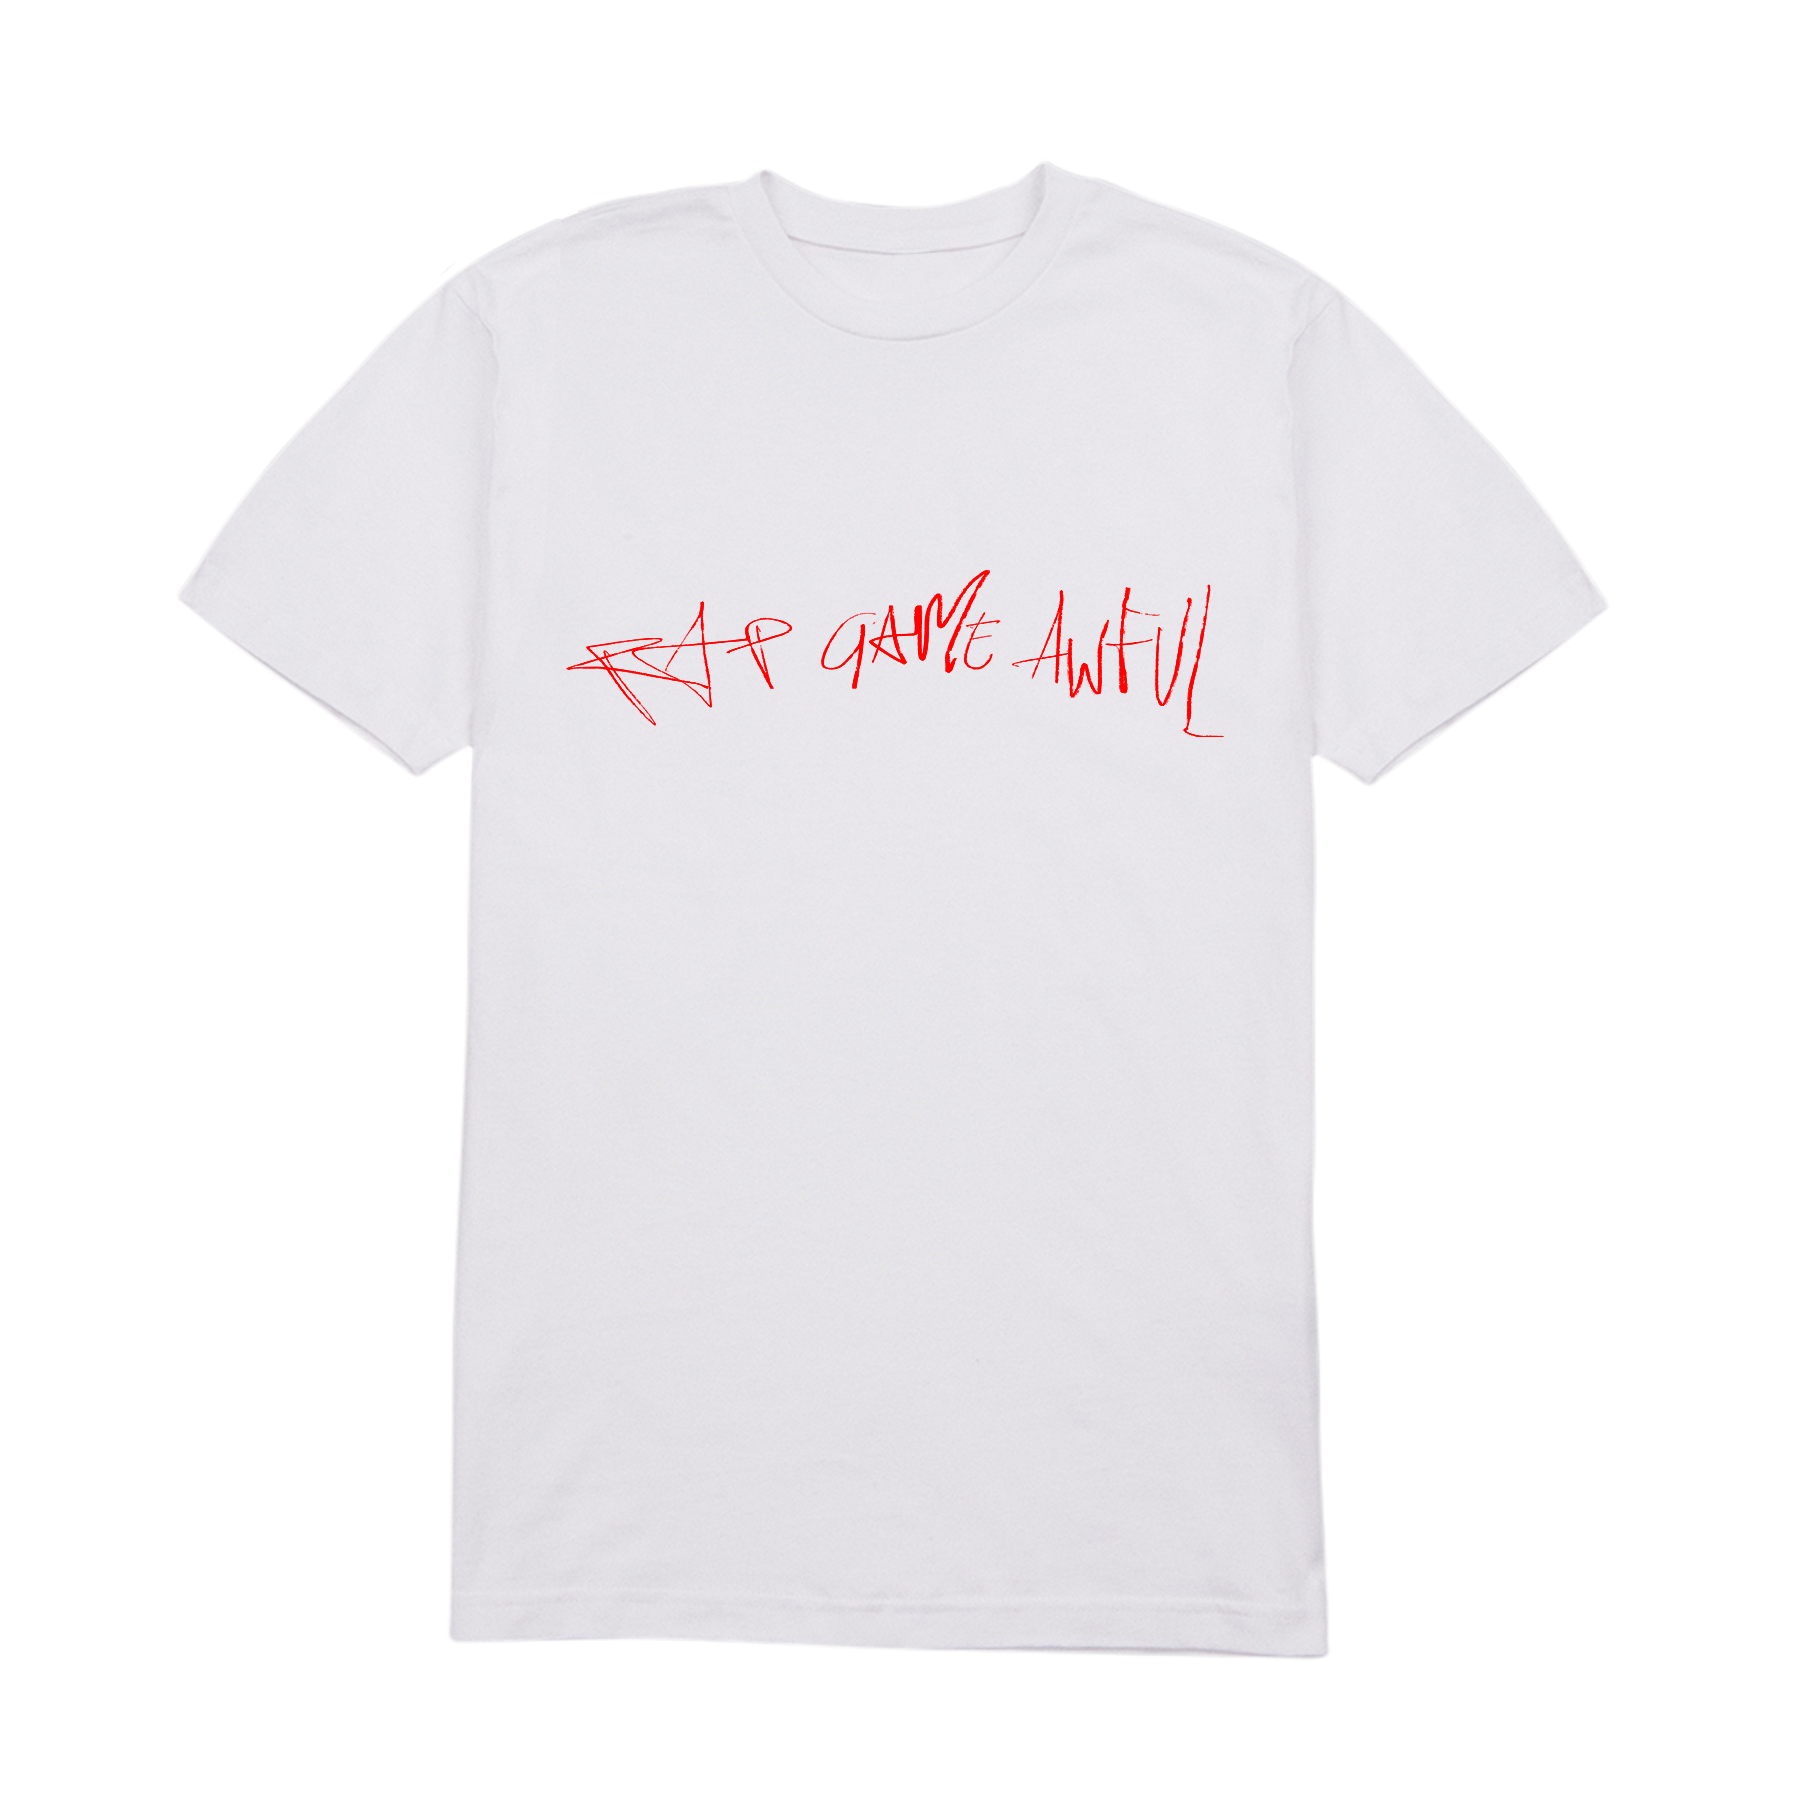 Clavish - Rap Game Awful: T-shirt (White/Red)